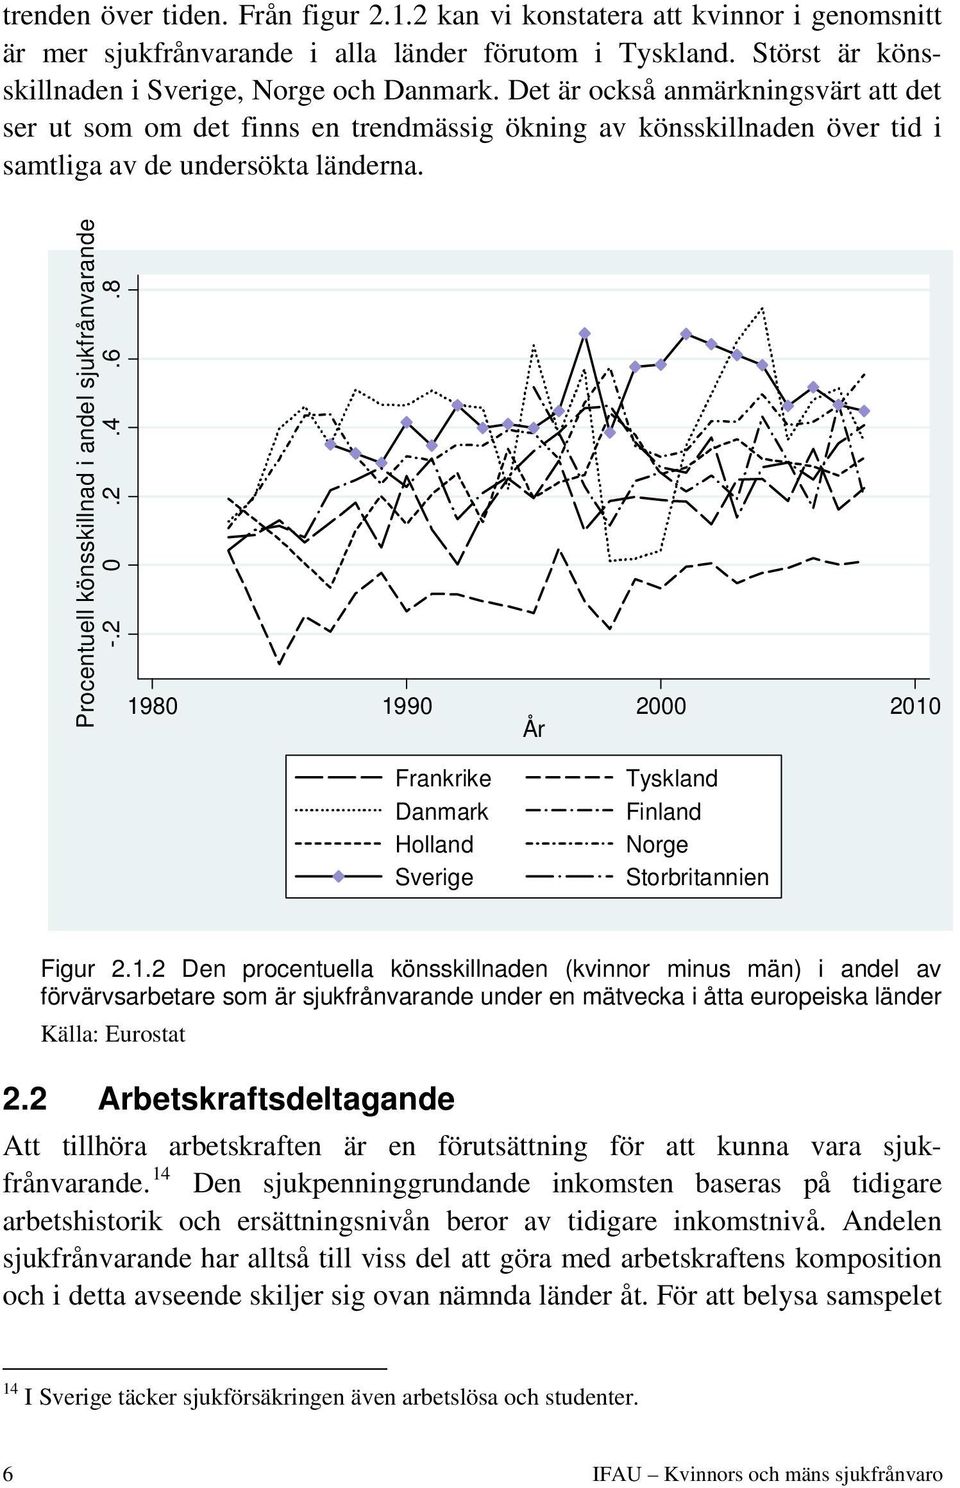 2 0.2.4.6.8 1980 1990 2000 2010 År Frankrike Danmark Holland Sverige Tyskland Finland Norge Storbritannien Figur 2.1.2 Den procentuella könsskillnaden (kvinnor minus män) i andel av förvärvsarbetare som är sjukfrånvarande under en mätvecka i åtta europeiska länder Källa: Eurostat 2.